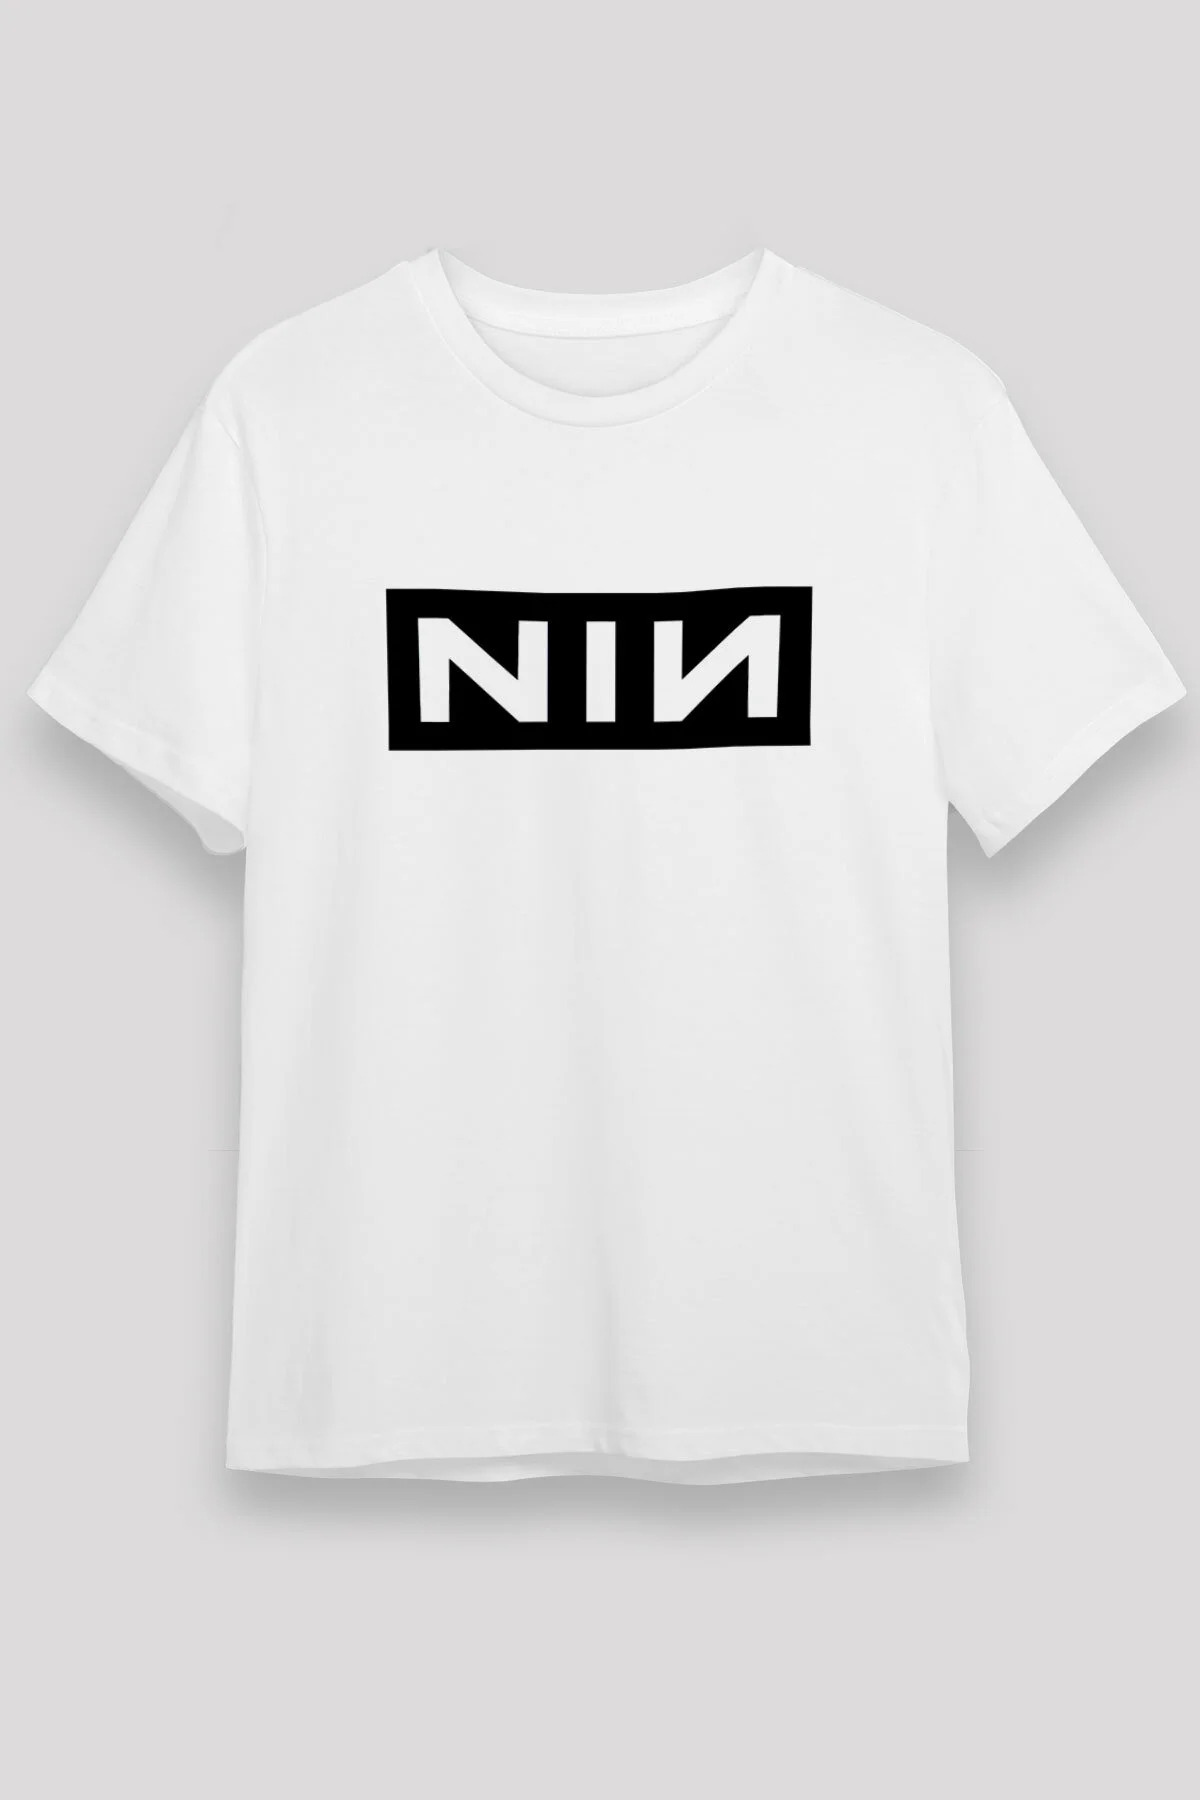 Nine Inch Nails T shirt, Music Band Tshirt  01